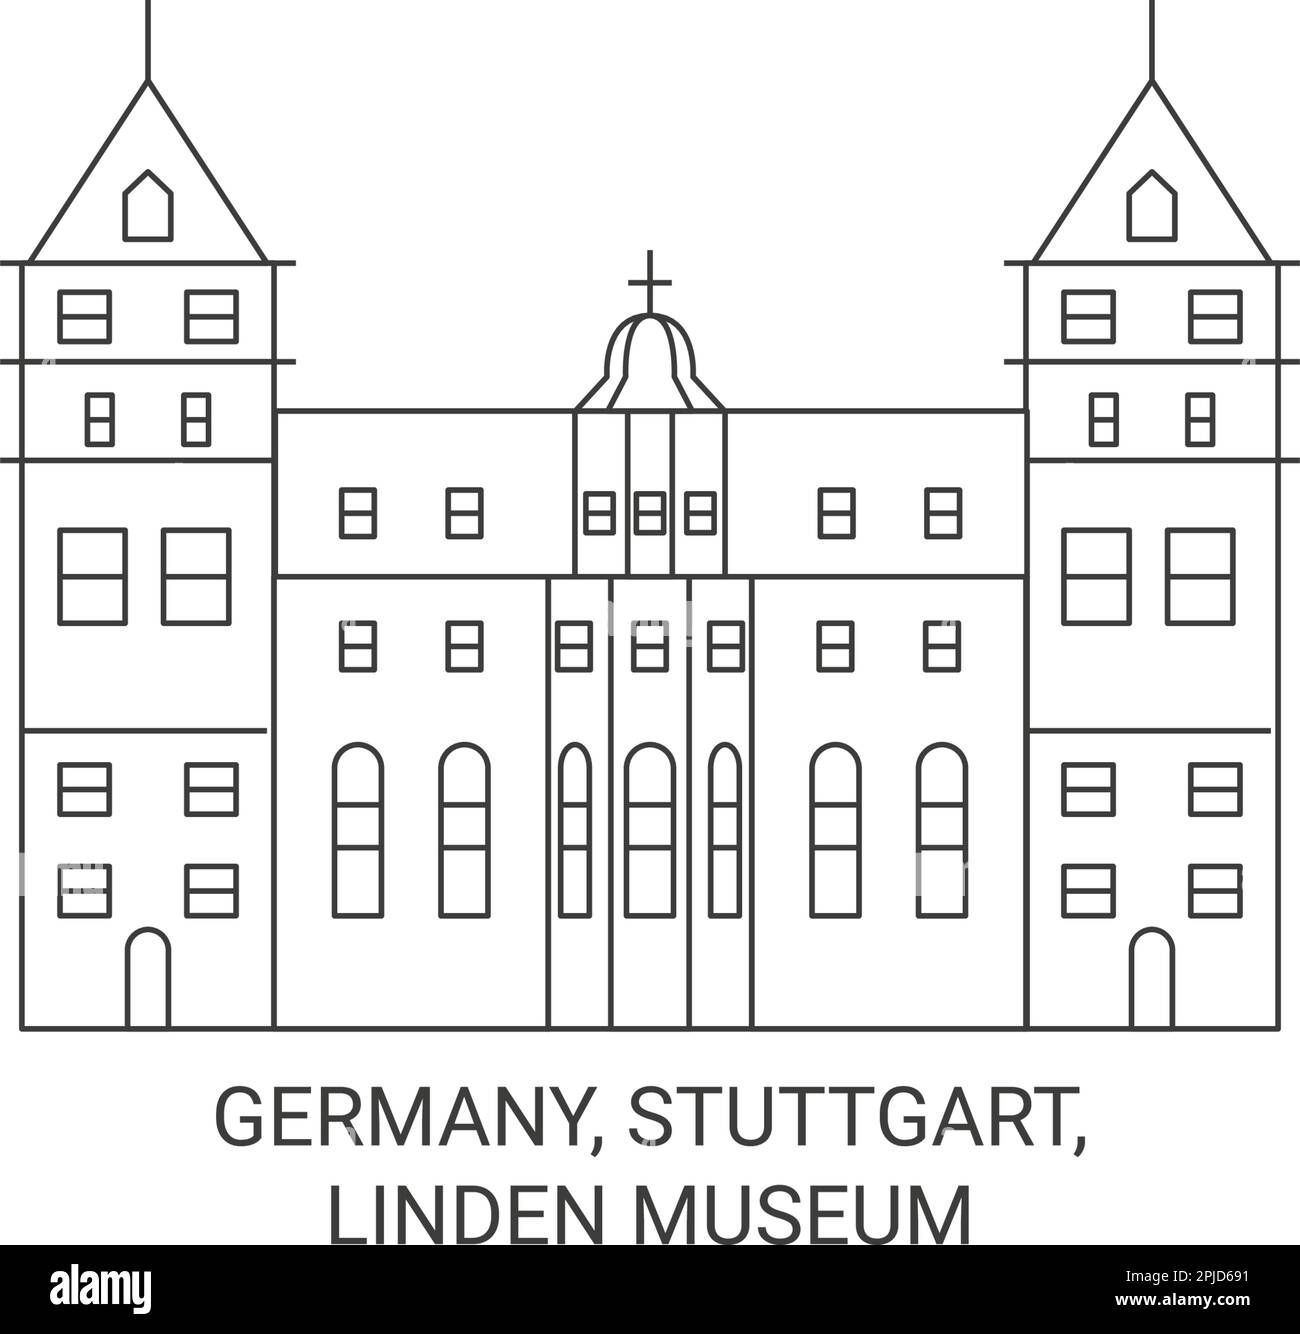 Deutschland, Stuttgart, Linden-Museum Reise-Wahrzeichen-Vektordarstellung Stock Vektor